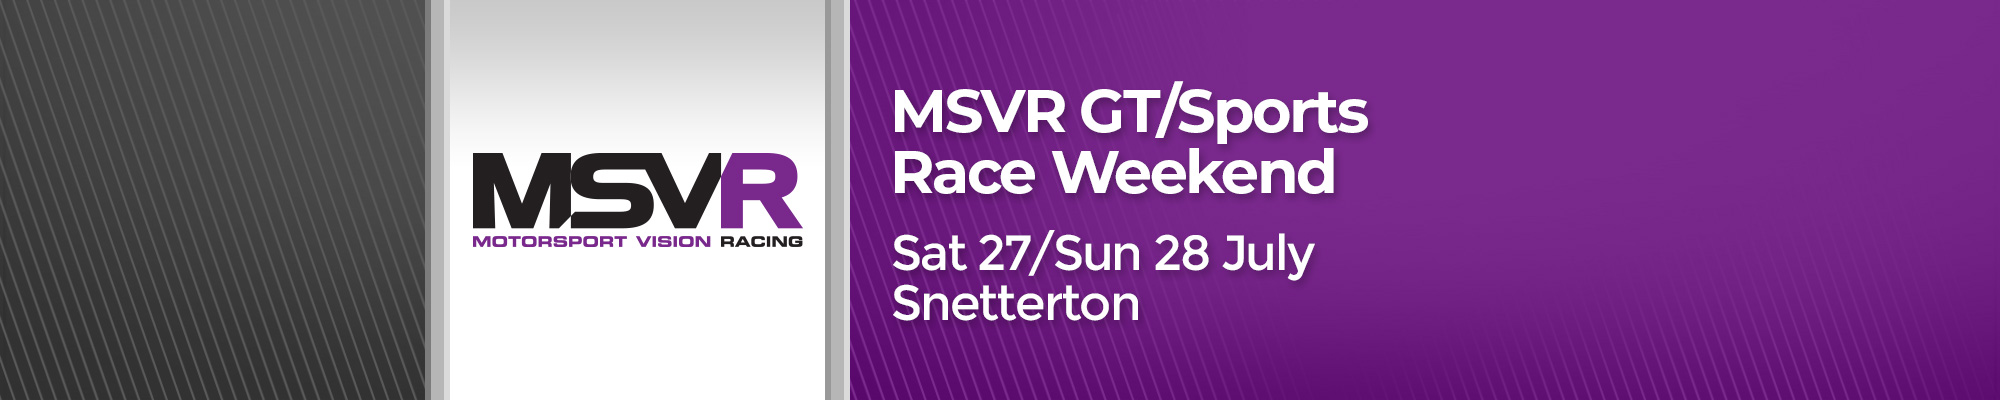 MSVR GT/Sports Race Weekend